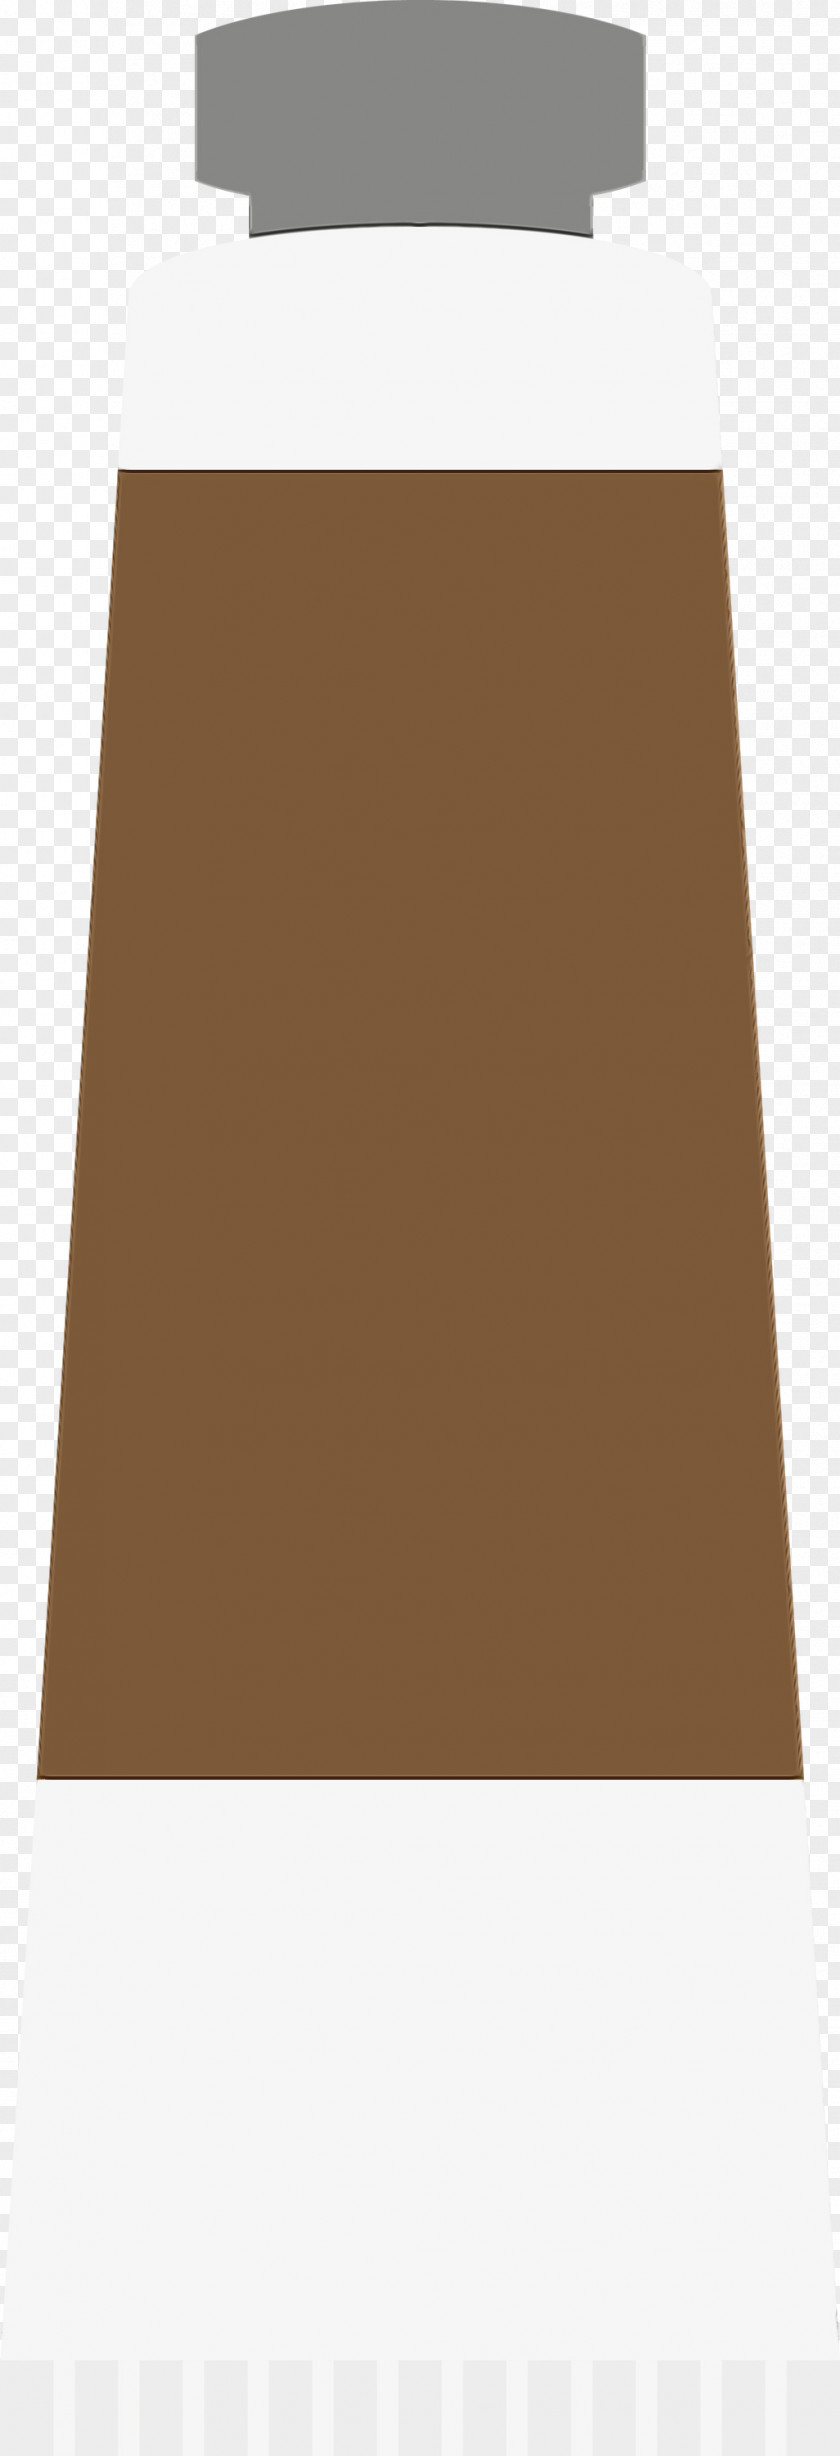 Brown Beige Tan Wood Rug PNG